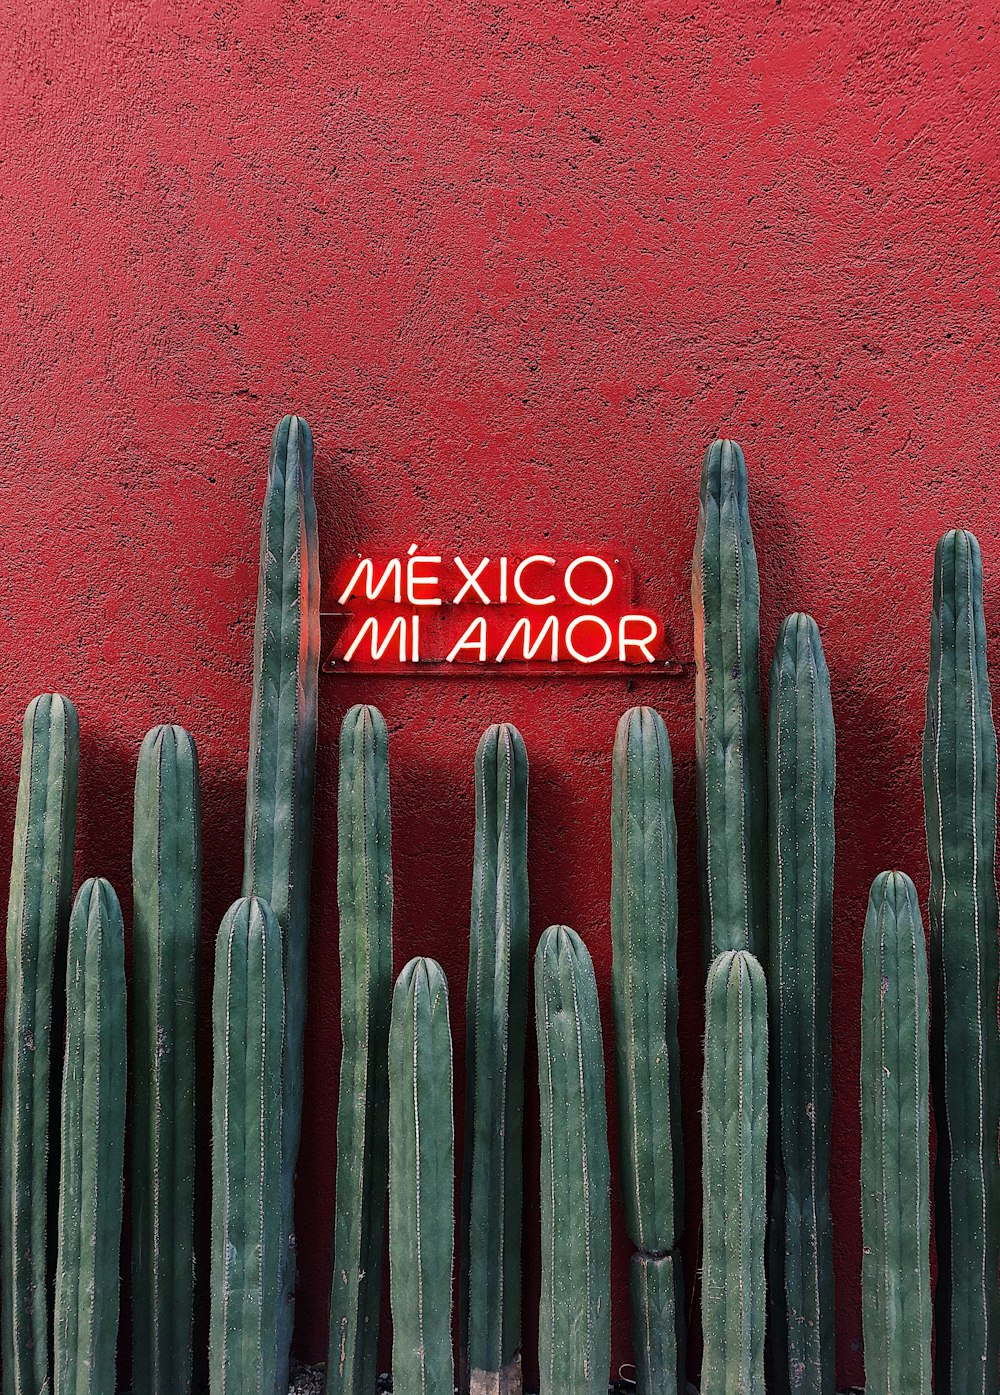 Mexico Innamor라고 적힌 표지판이 있는 빨간 벽